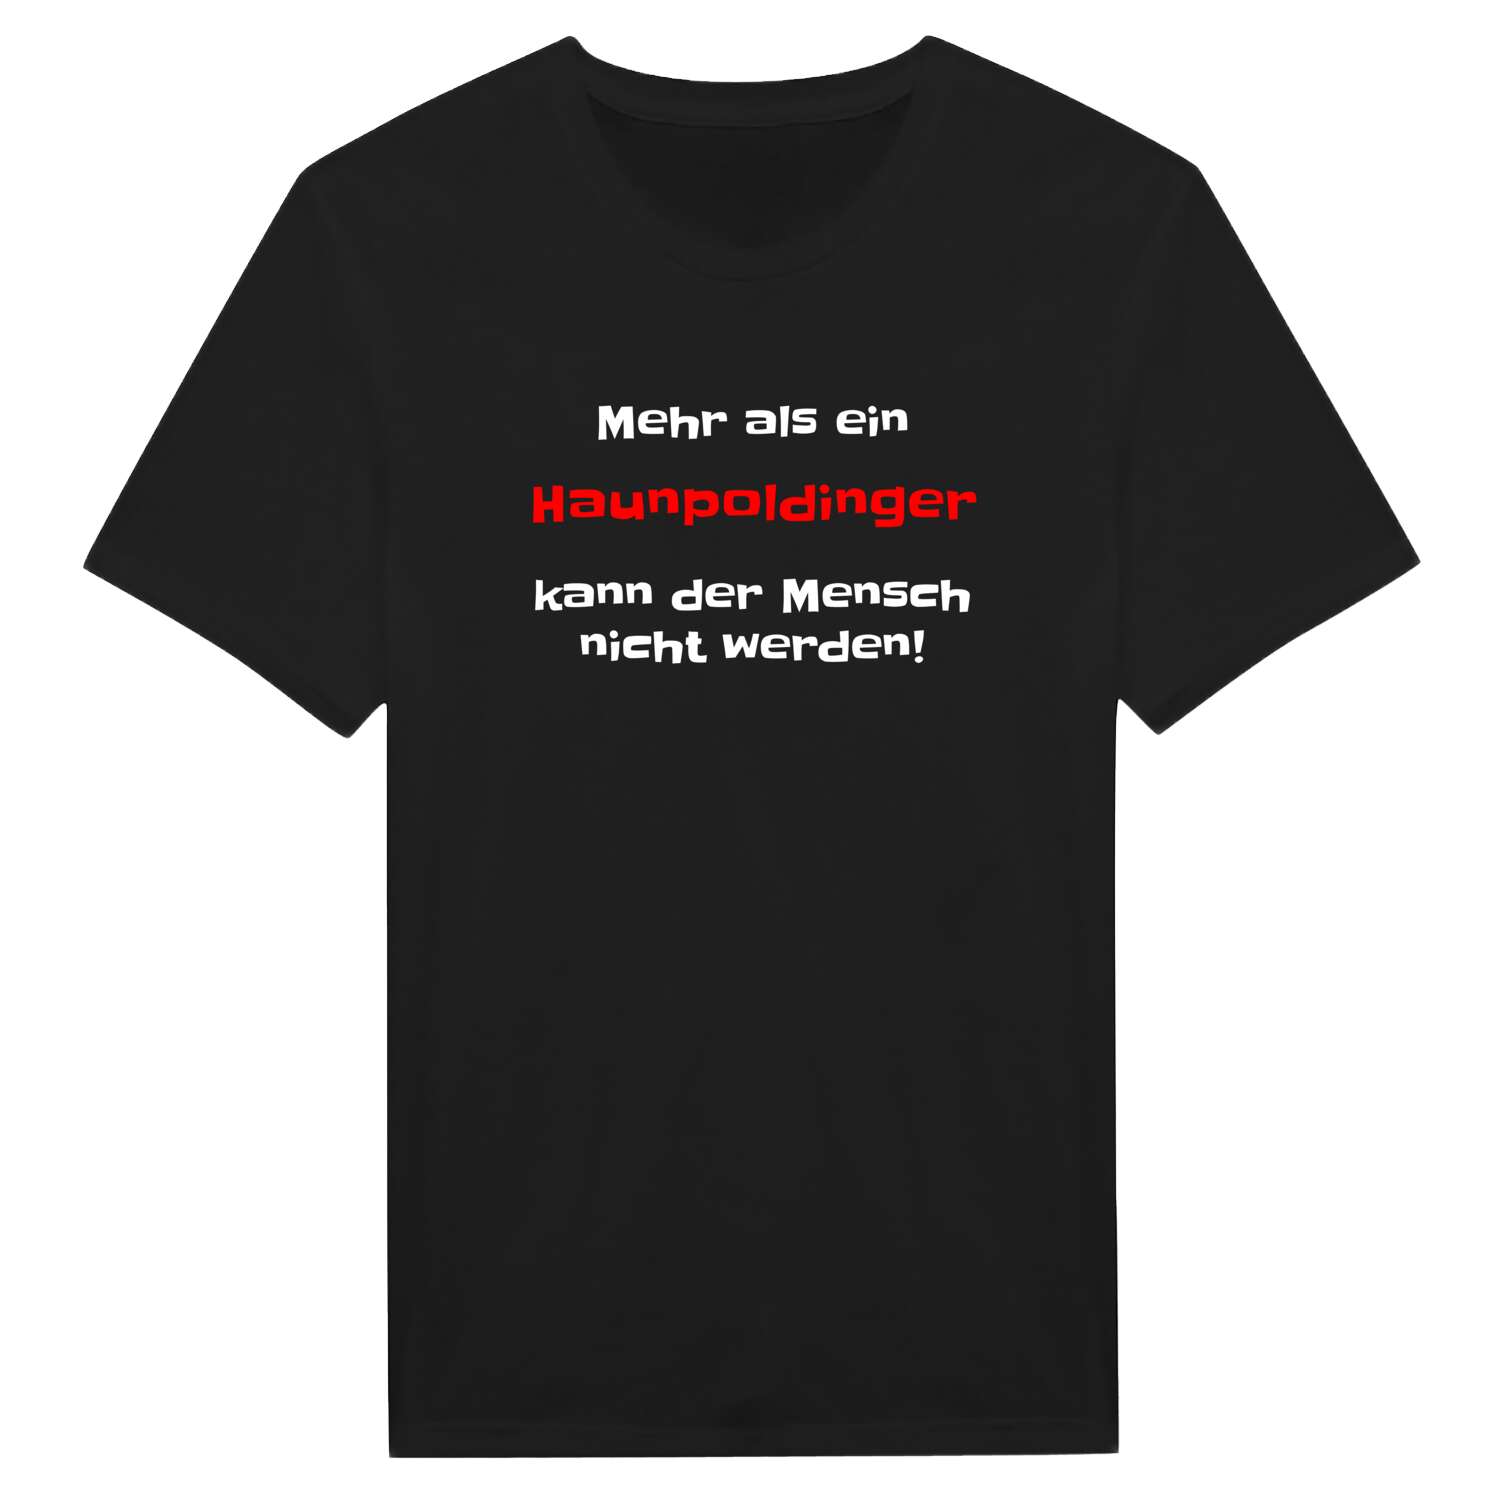 Haunpolding T-Shirt »Mehr als ein«